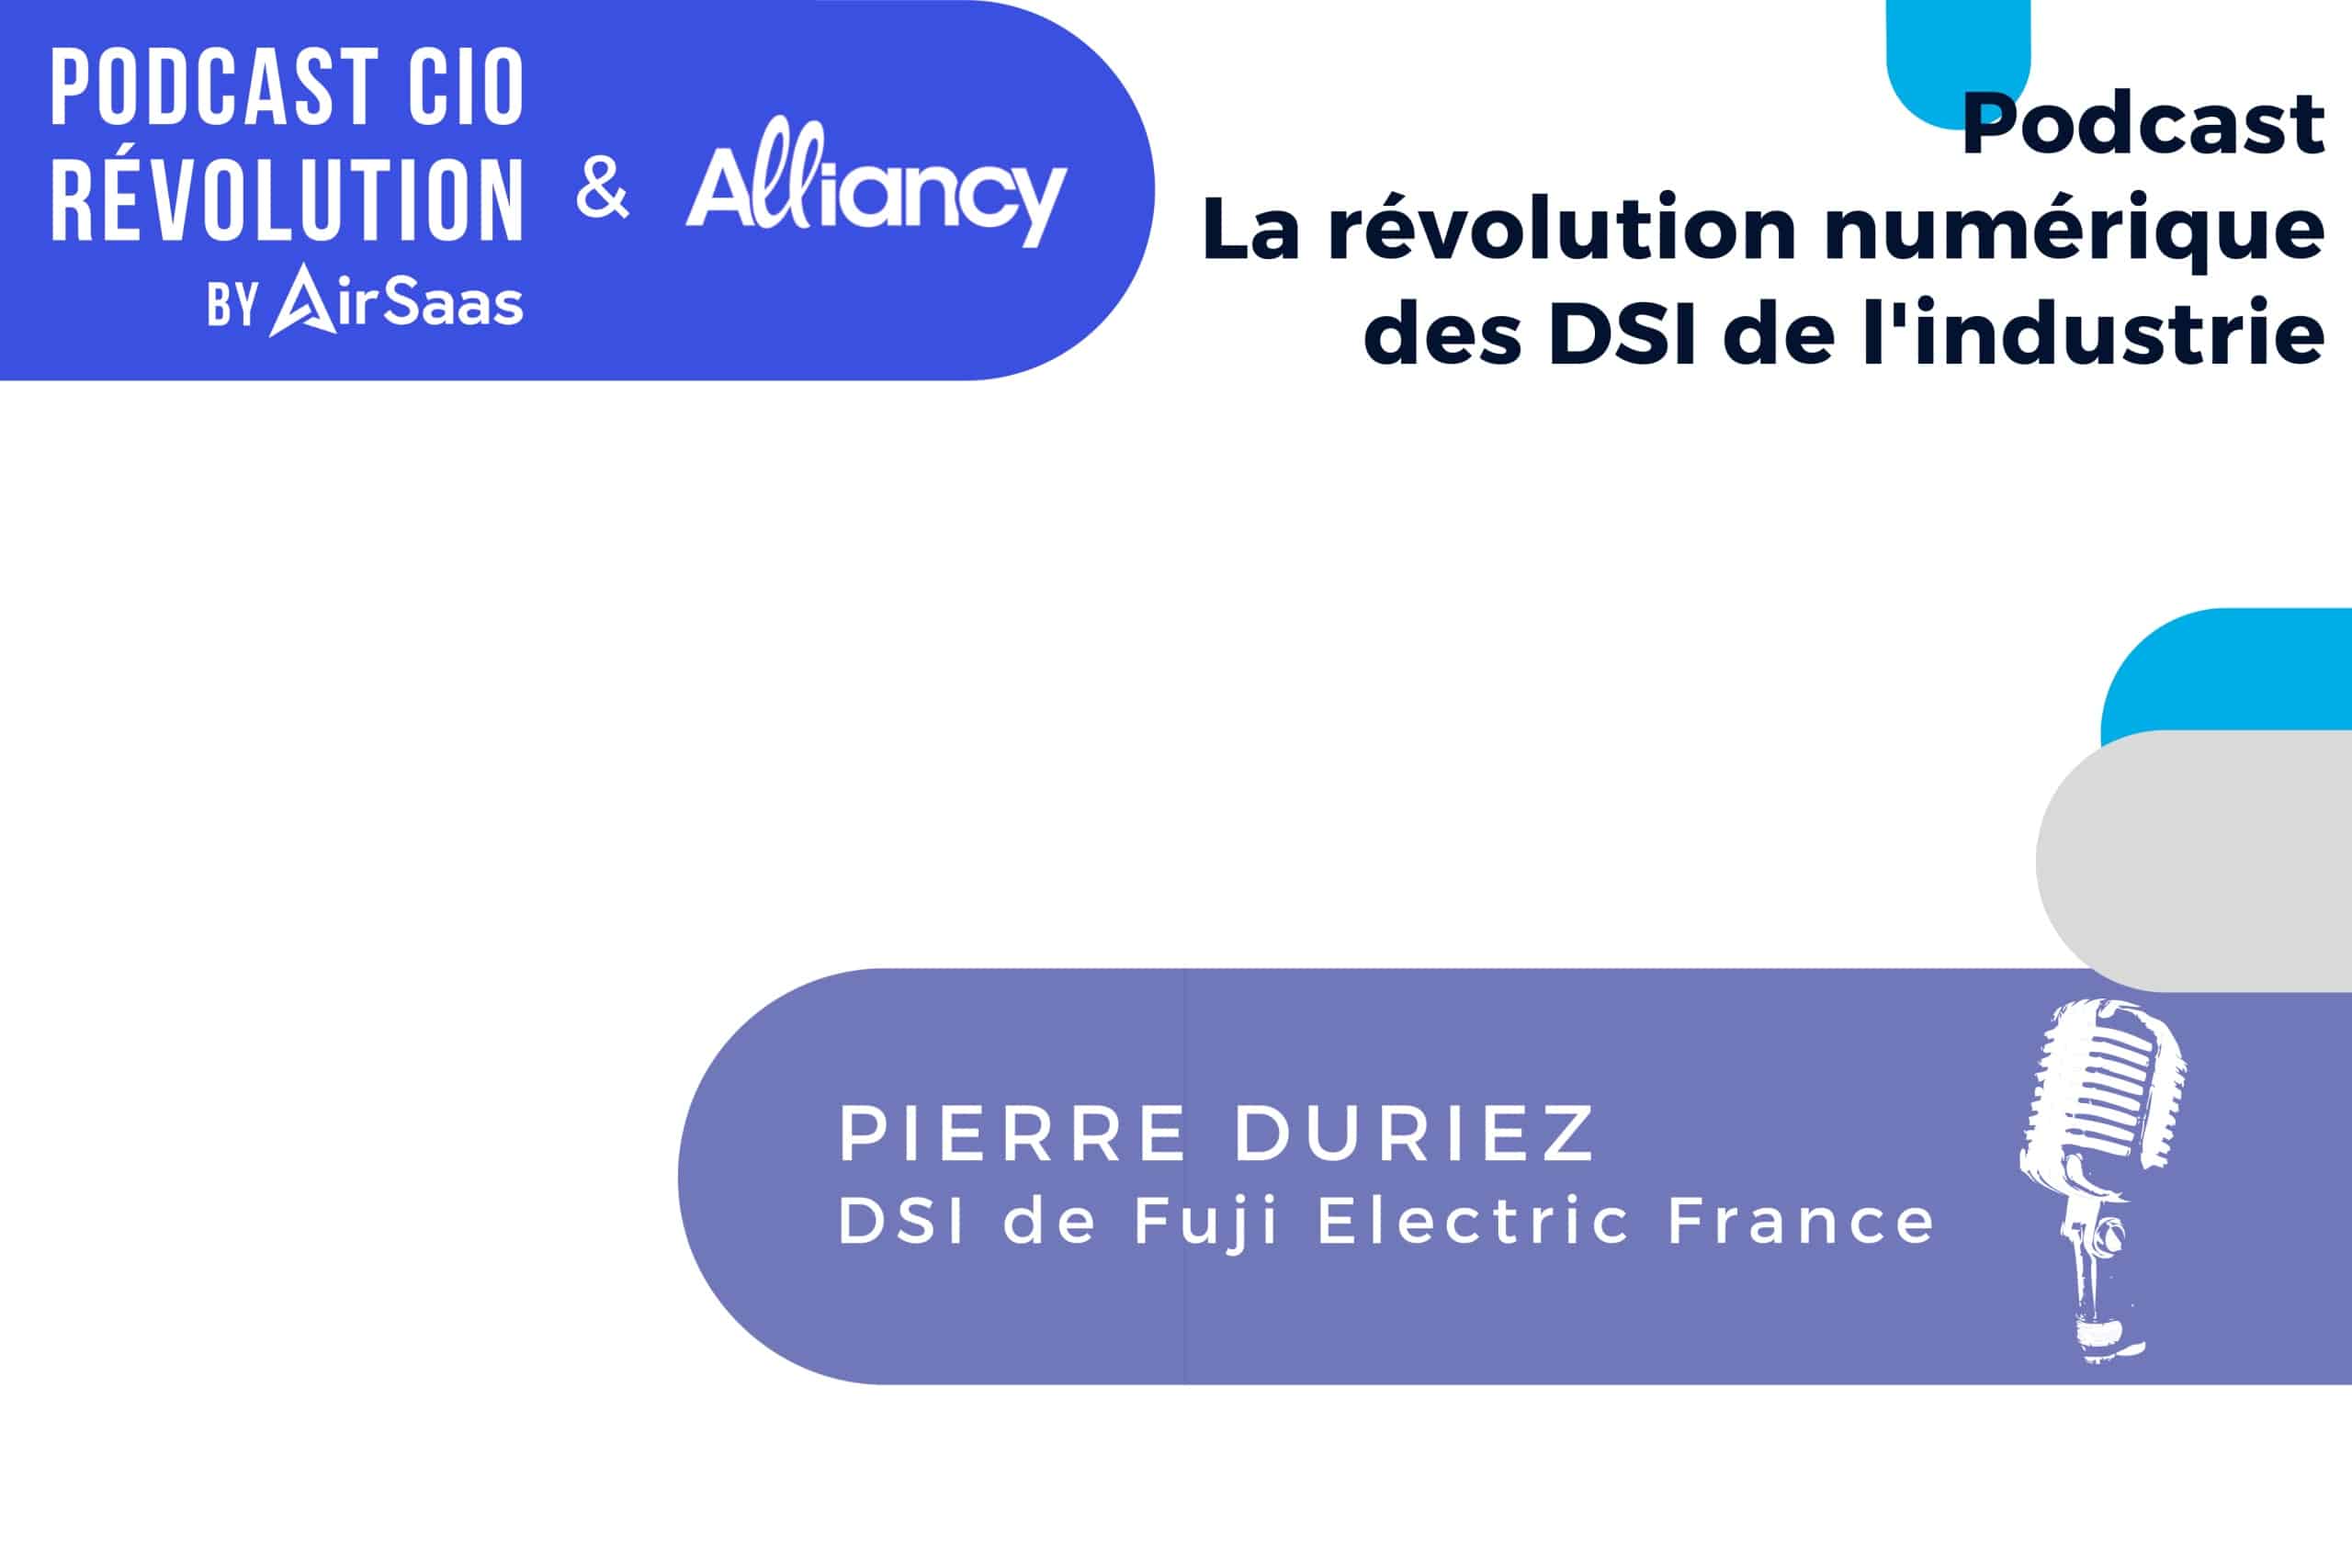 Podcast RIO revolution saison 2 episode 6 Pierre Duriez, DSI France de Fuji Electric